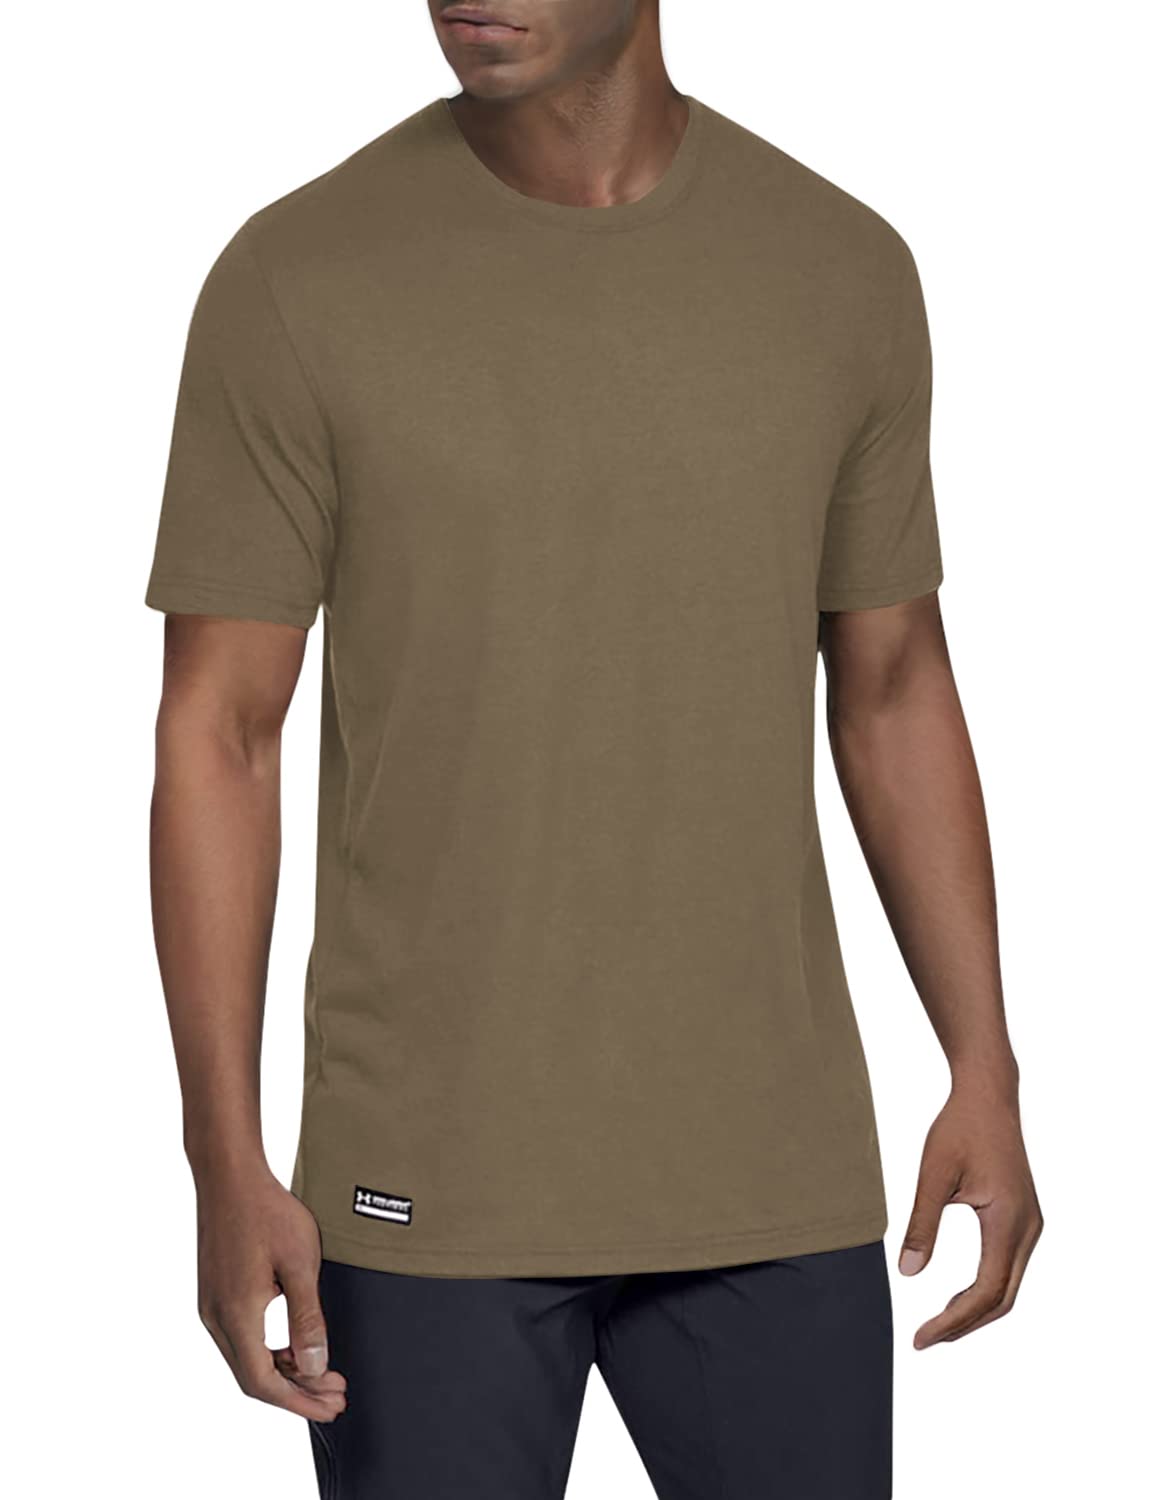 Under Armour Men's Tac Cotton T-Shirt